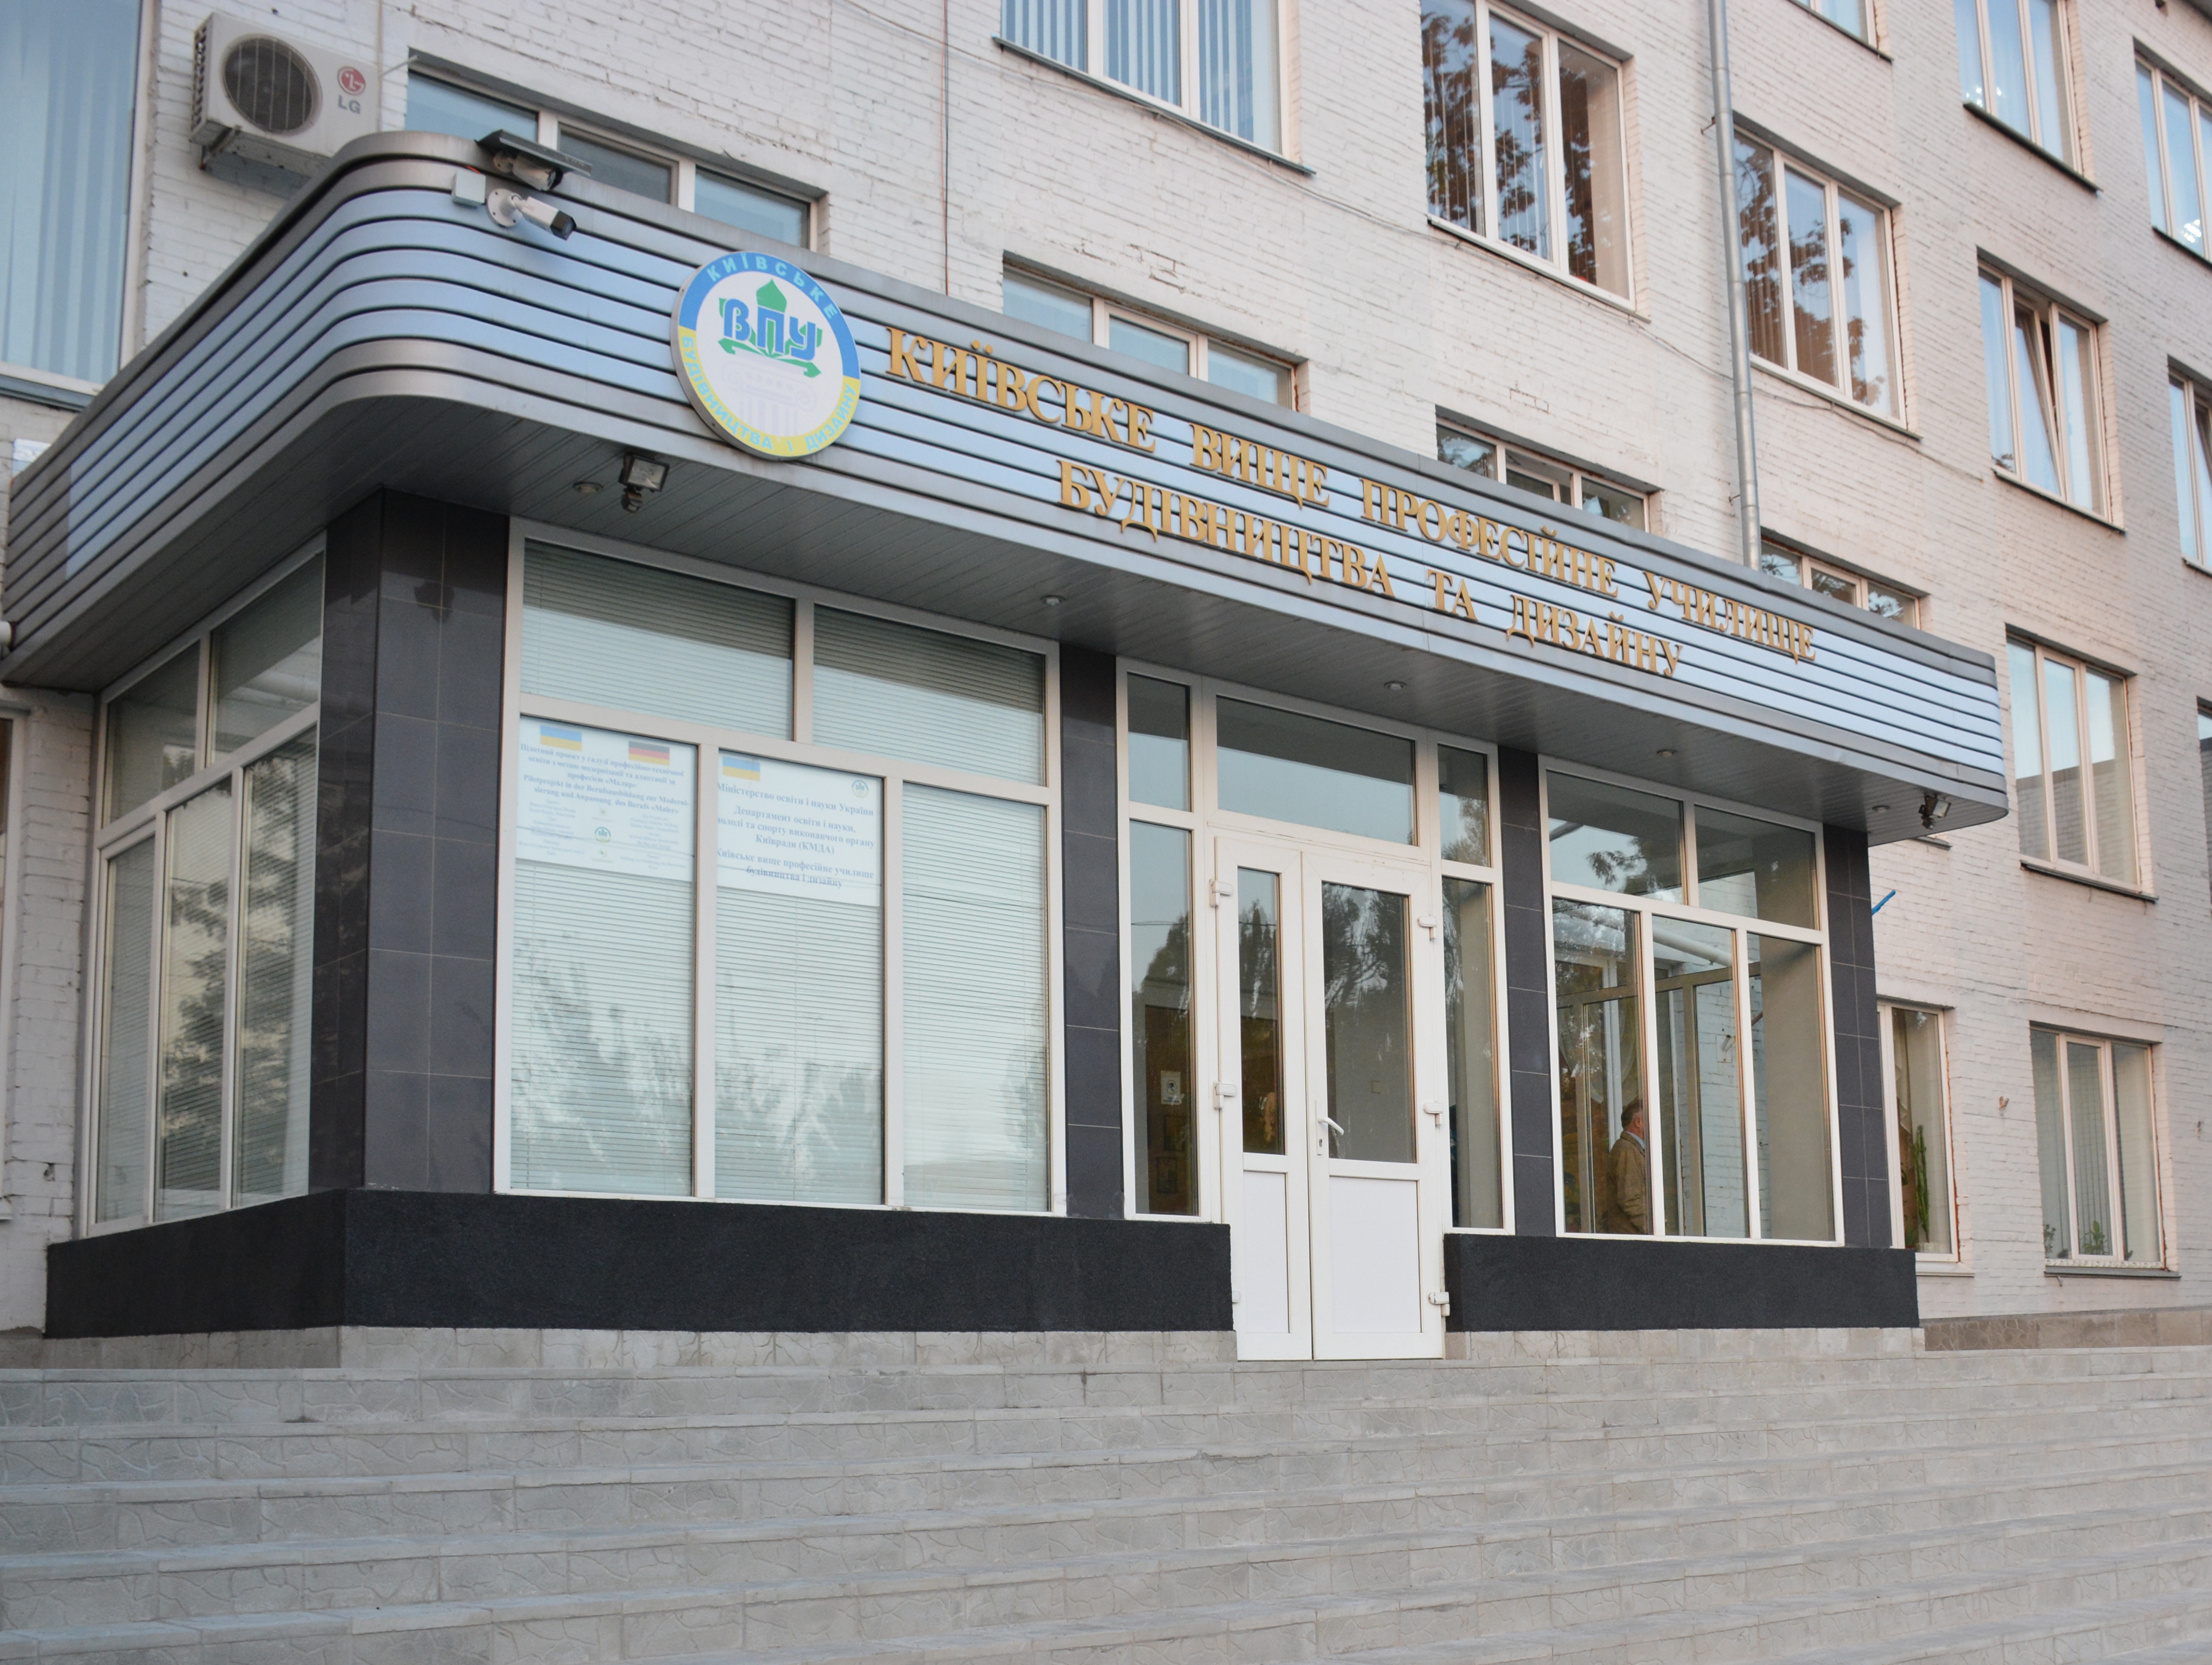 Подольское управление образования и Киевское строительное училище подвергнут аудиту